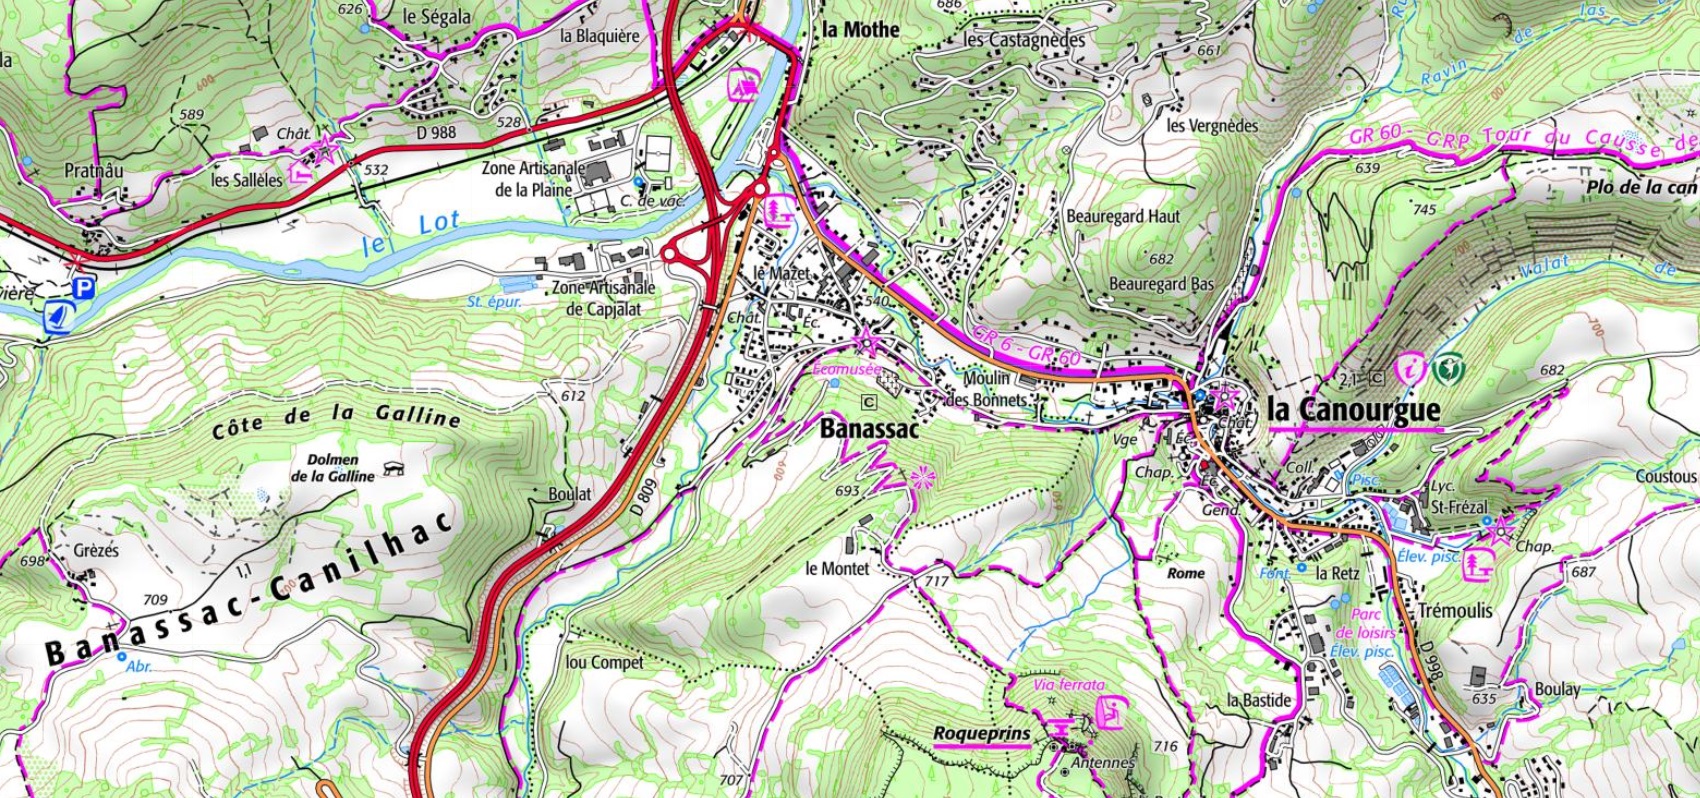 Plan et carte du village de Banassac au bords du Lot en Lozère (Occitanie). Chemins de randonnées: GR®6, GR®60 et GRP Tour du Causse Sauveterre.